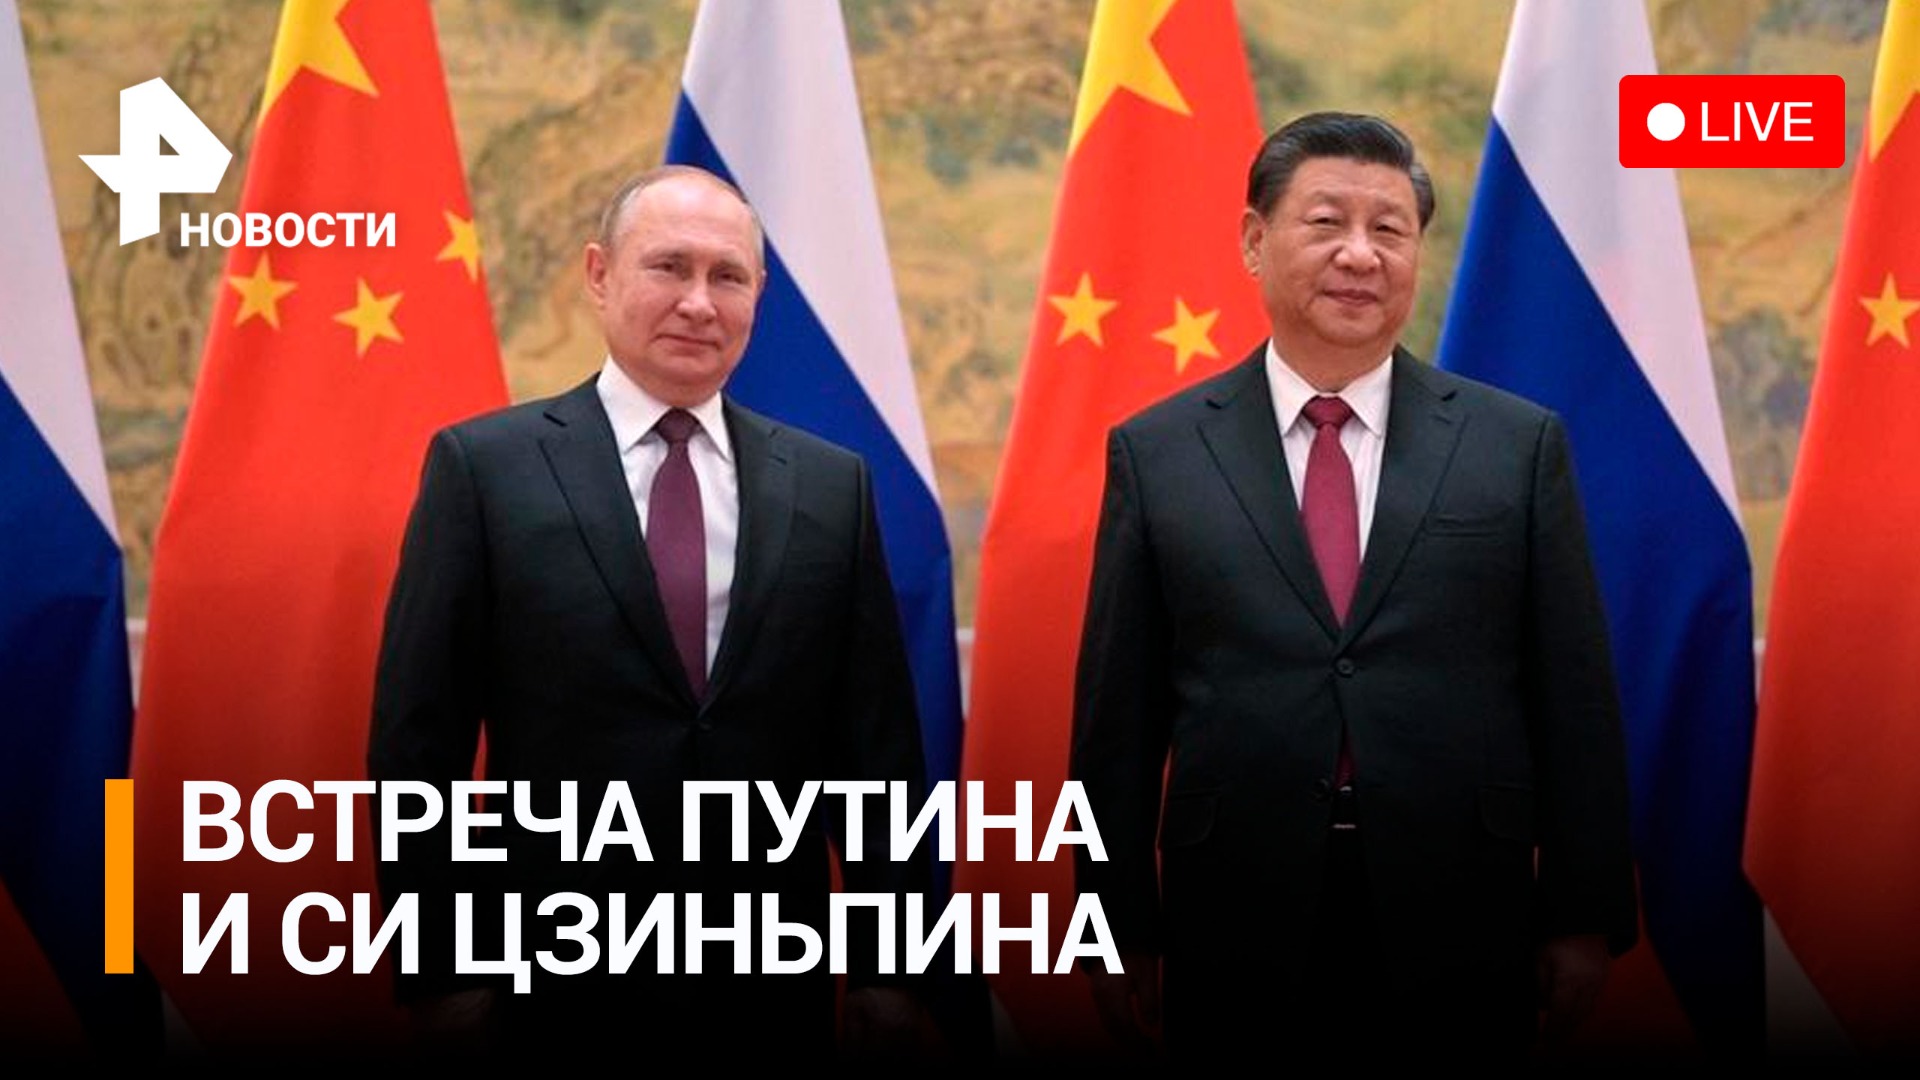 Протокольная встреча Путина и Си Цзиньпина в Москве - Прямая Трансляция 